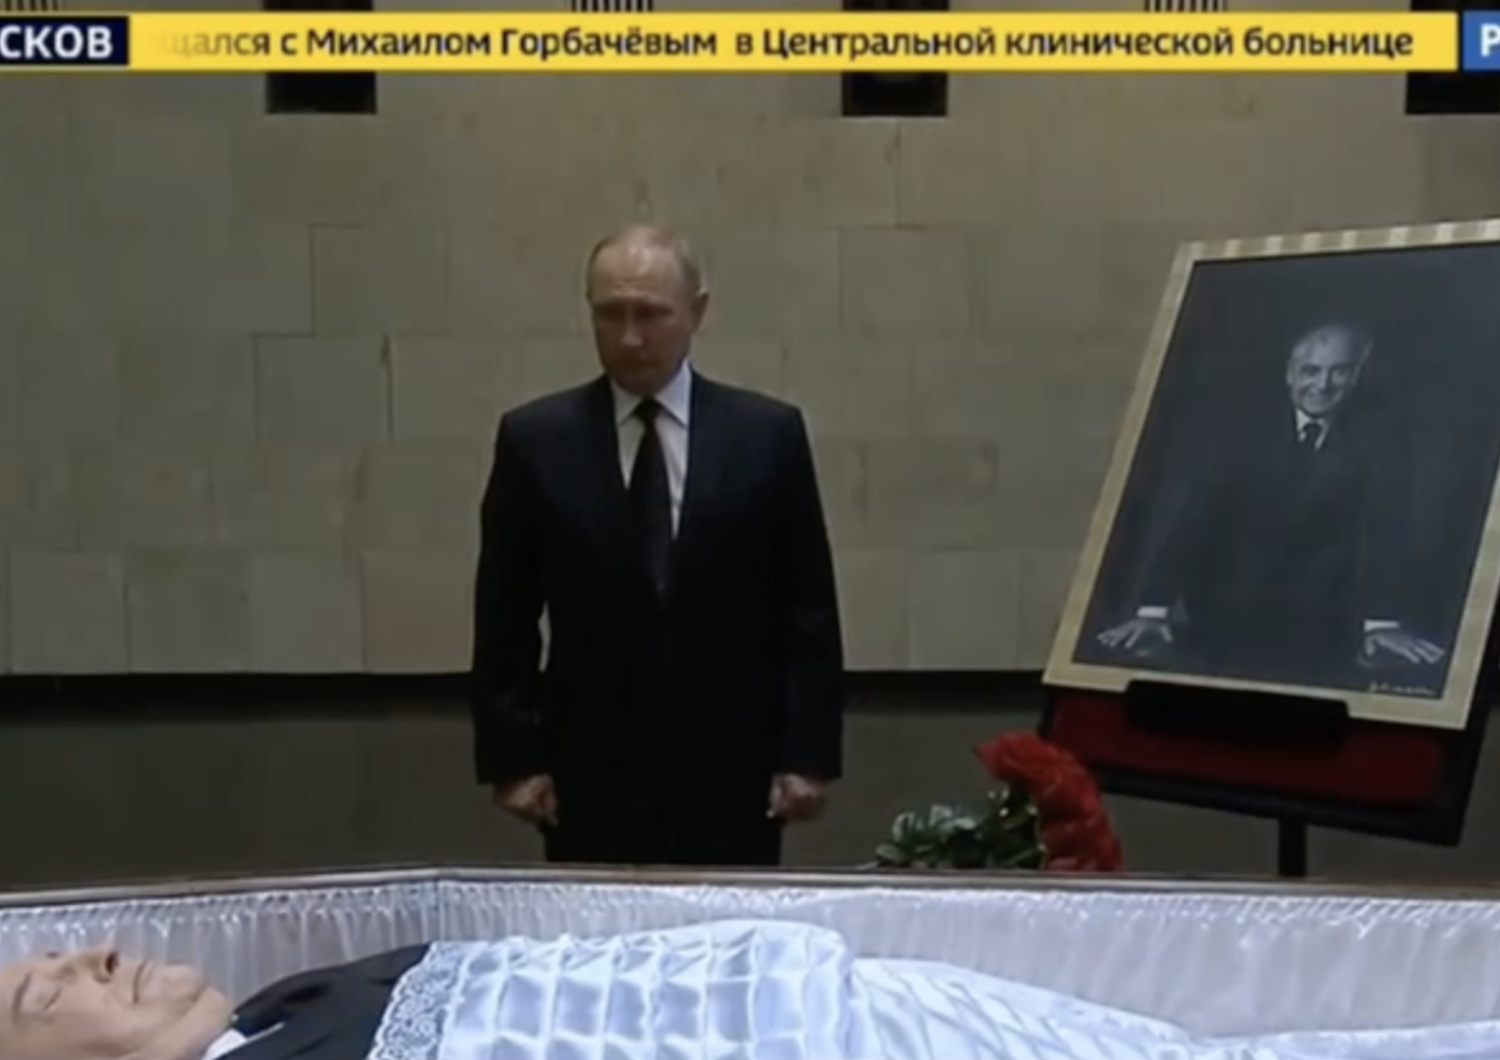 Vladimir Putin rende omaggio alla salma di Gorbaciov